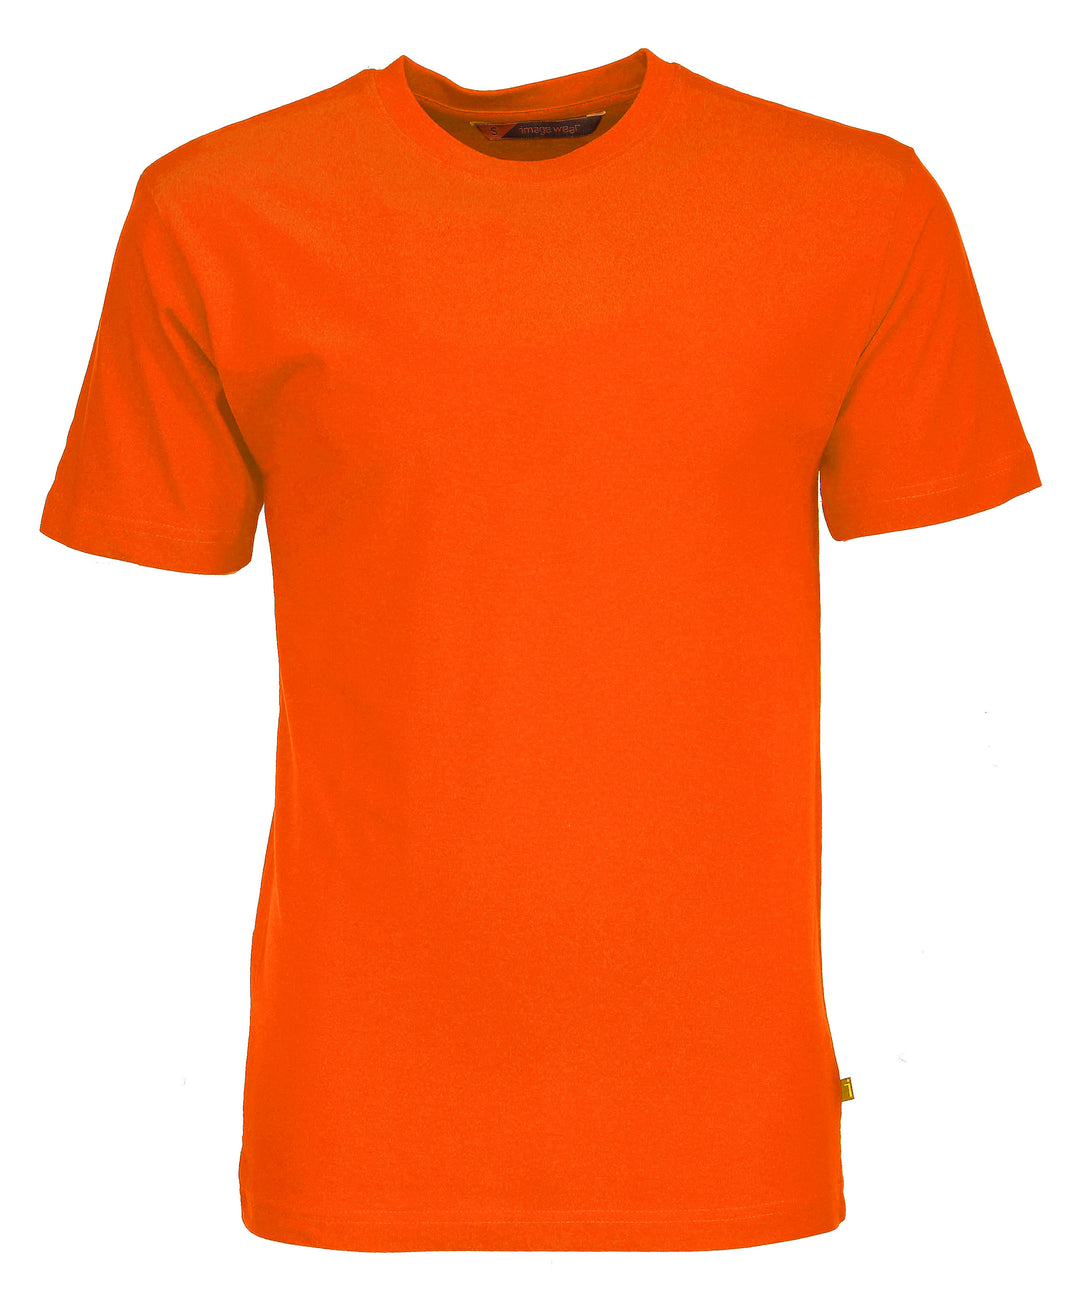 Koralli/ Oranssinpunainen t-paita. Lyhythihainen, pyöreä pääntie. Kapea, suora malli.